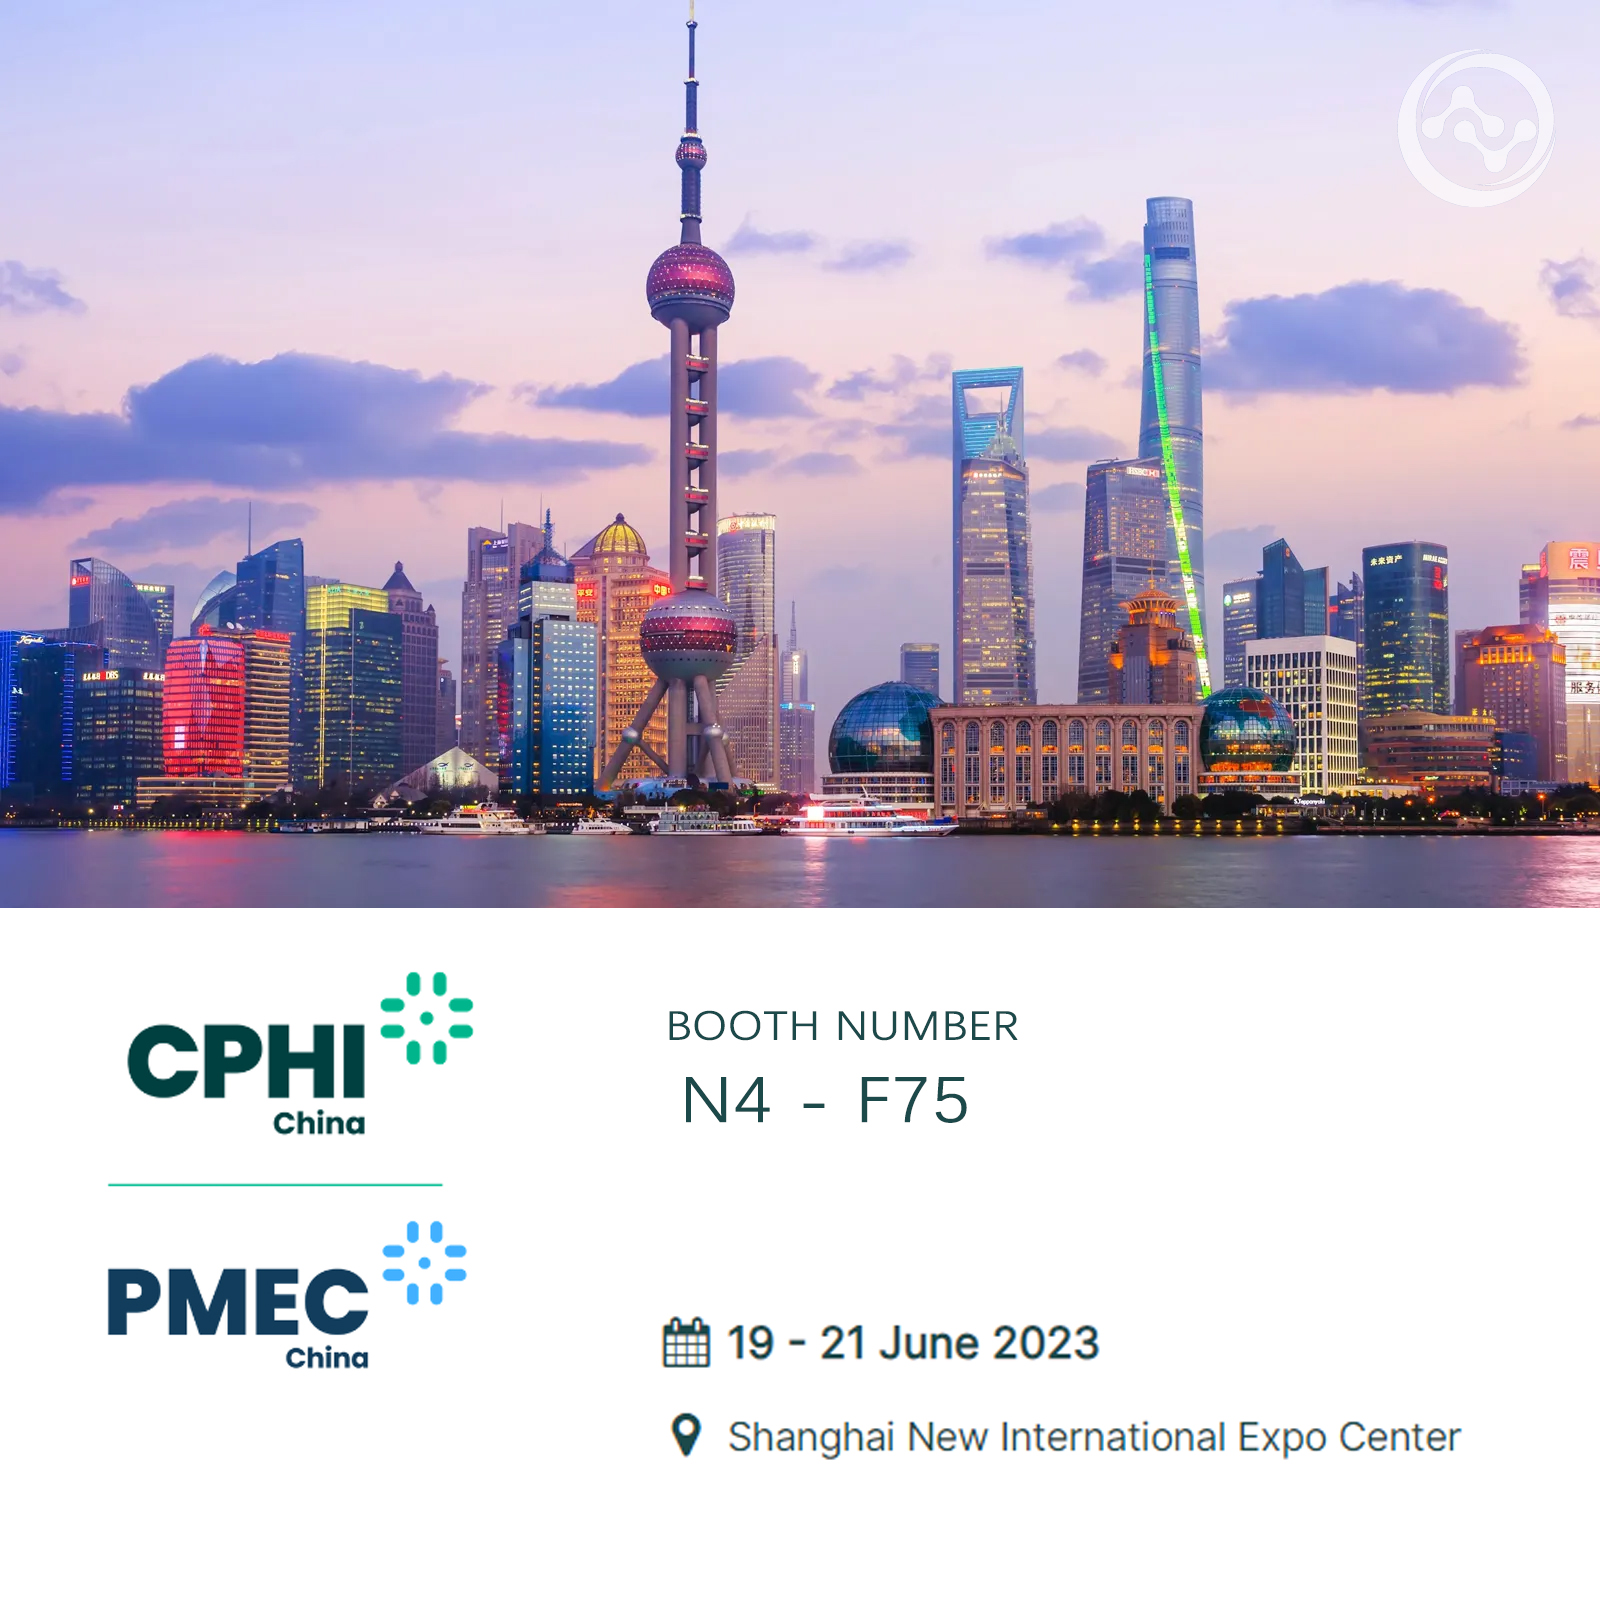 CPhI China June 19-21, 2023 in Shanghai